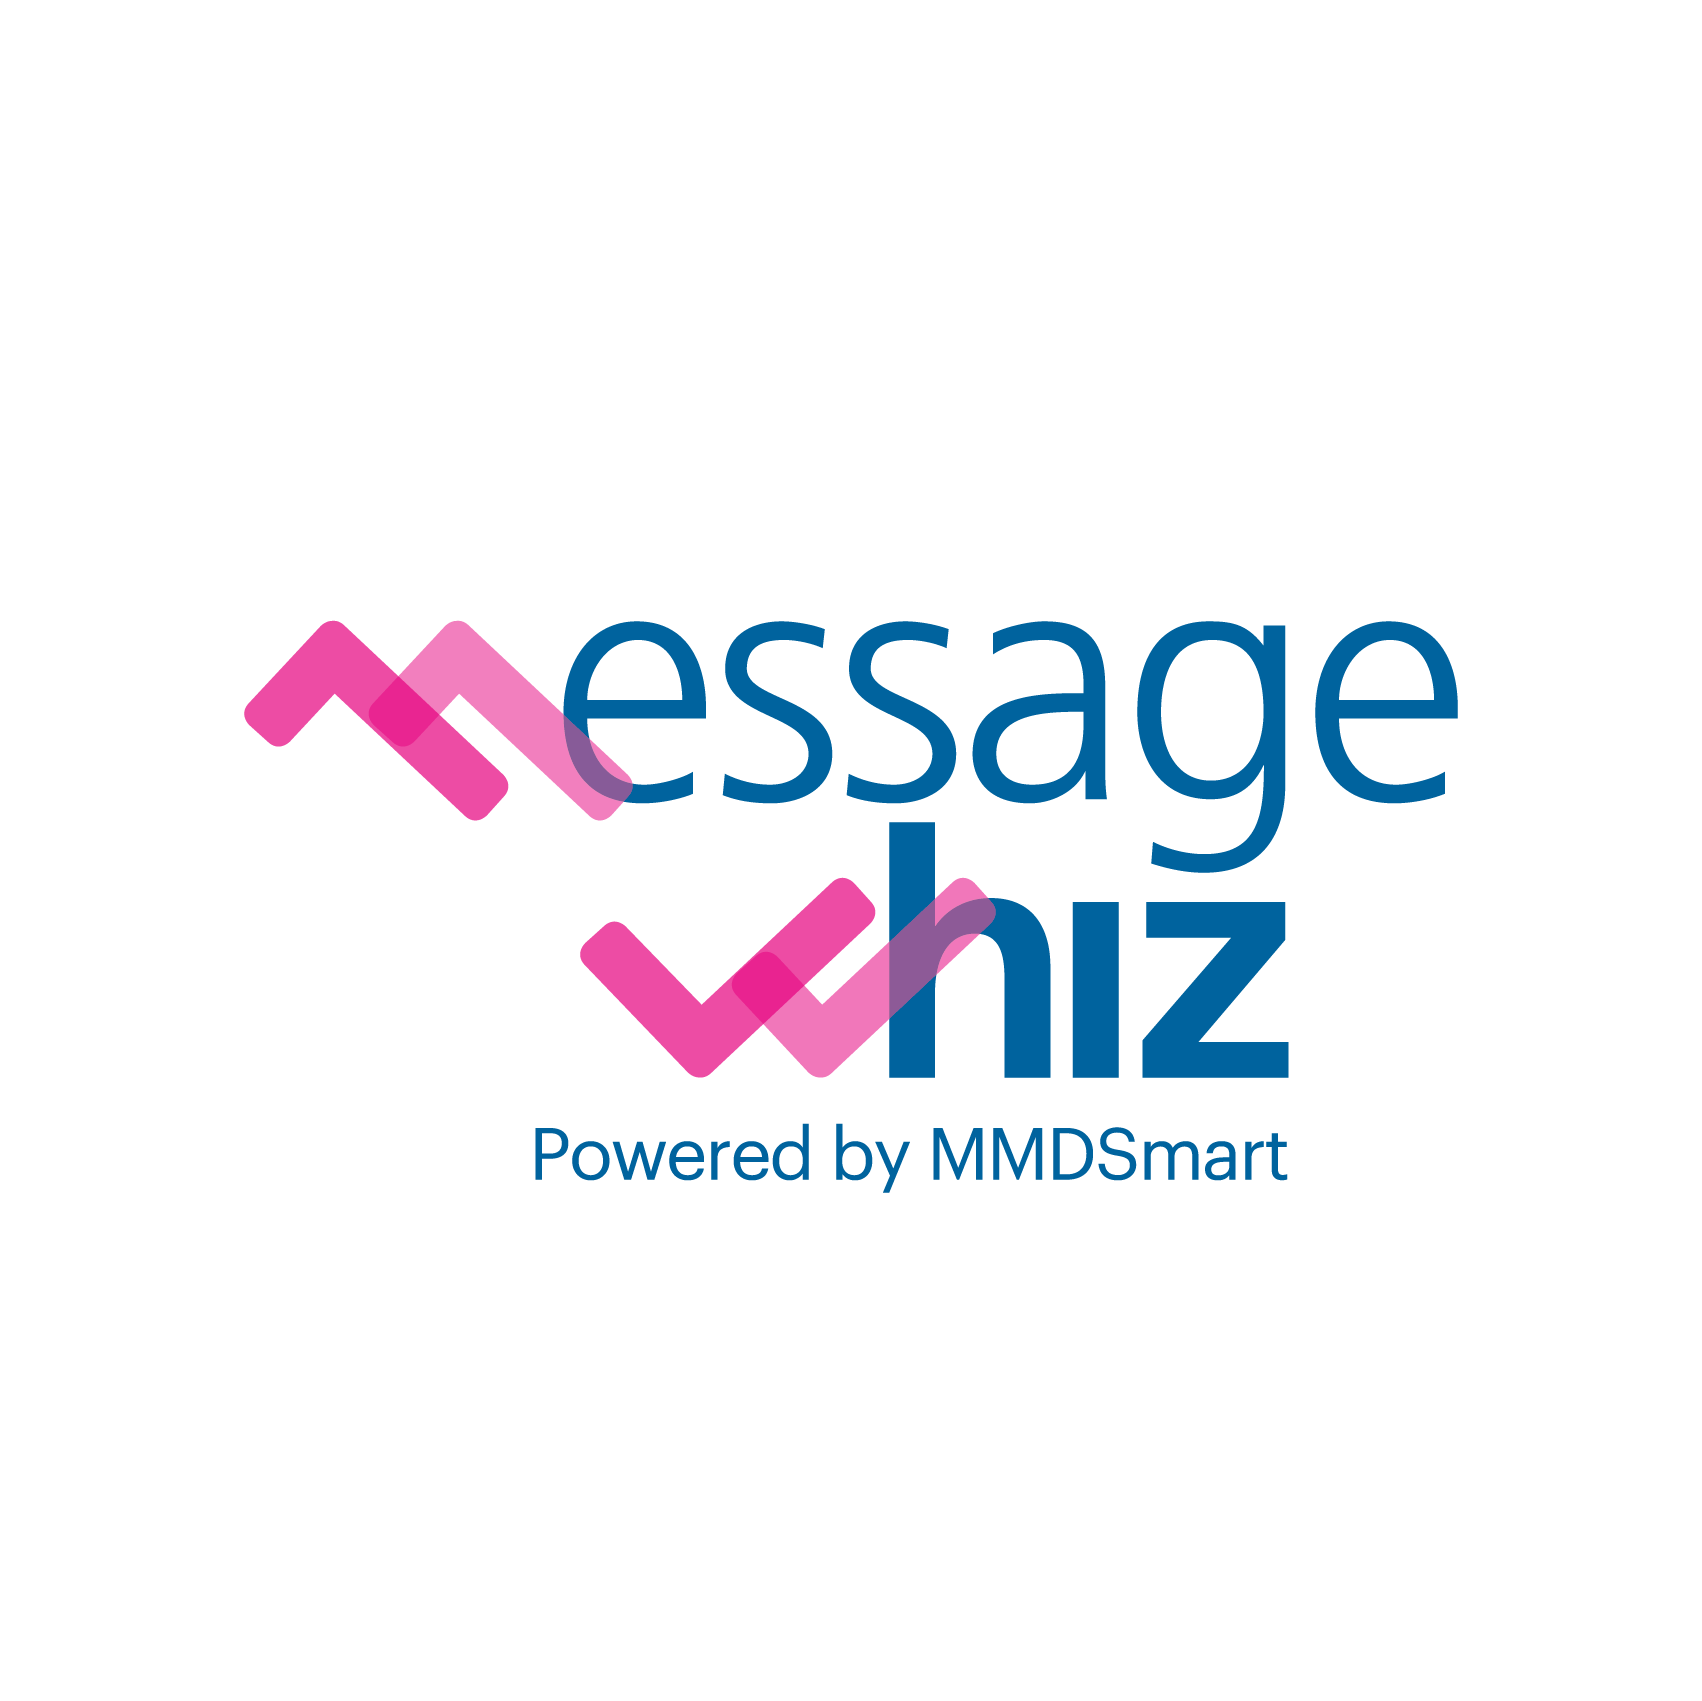 MMD Smart / Message Whizz